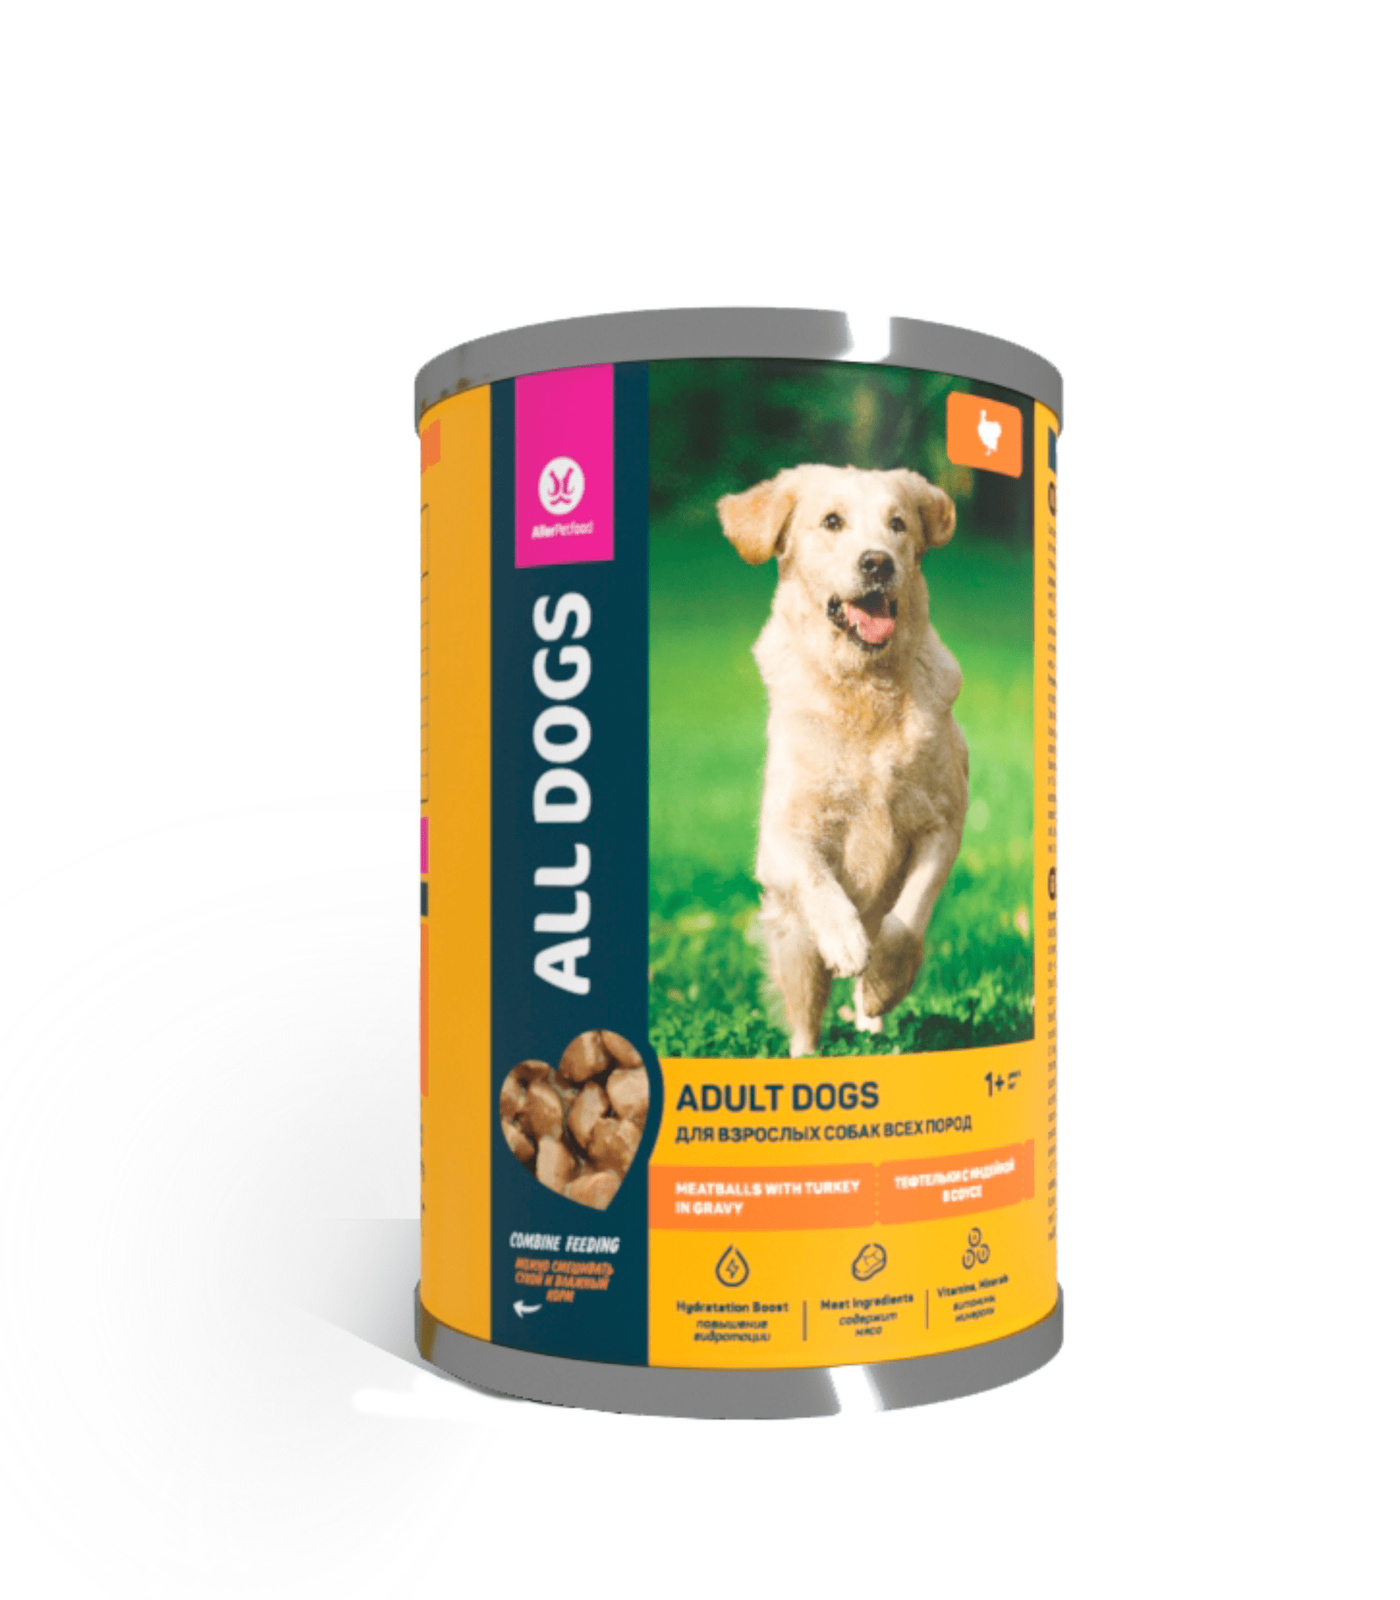 All Dogs корм консервированный для собак тефтельки с индейкой в соусе, банка (415 г)